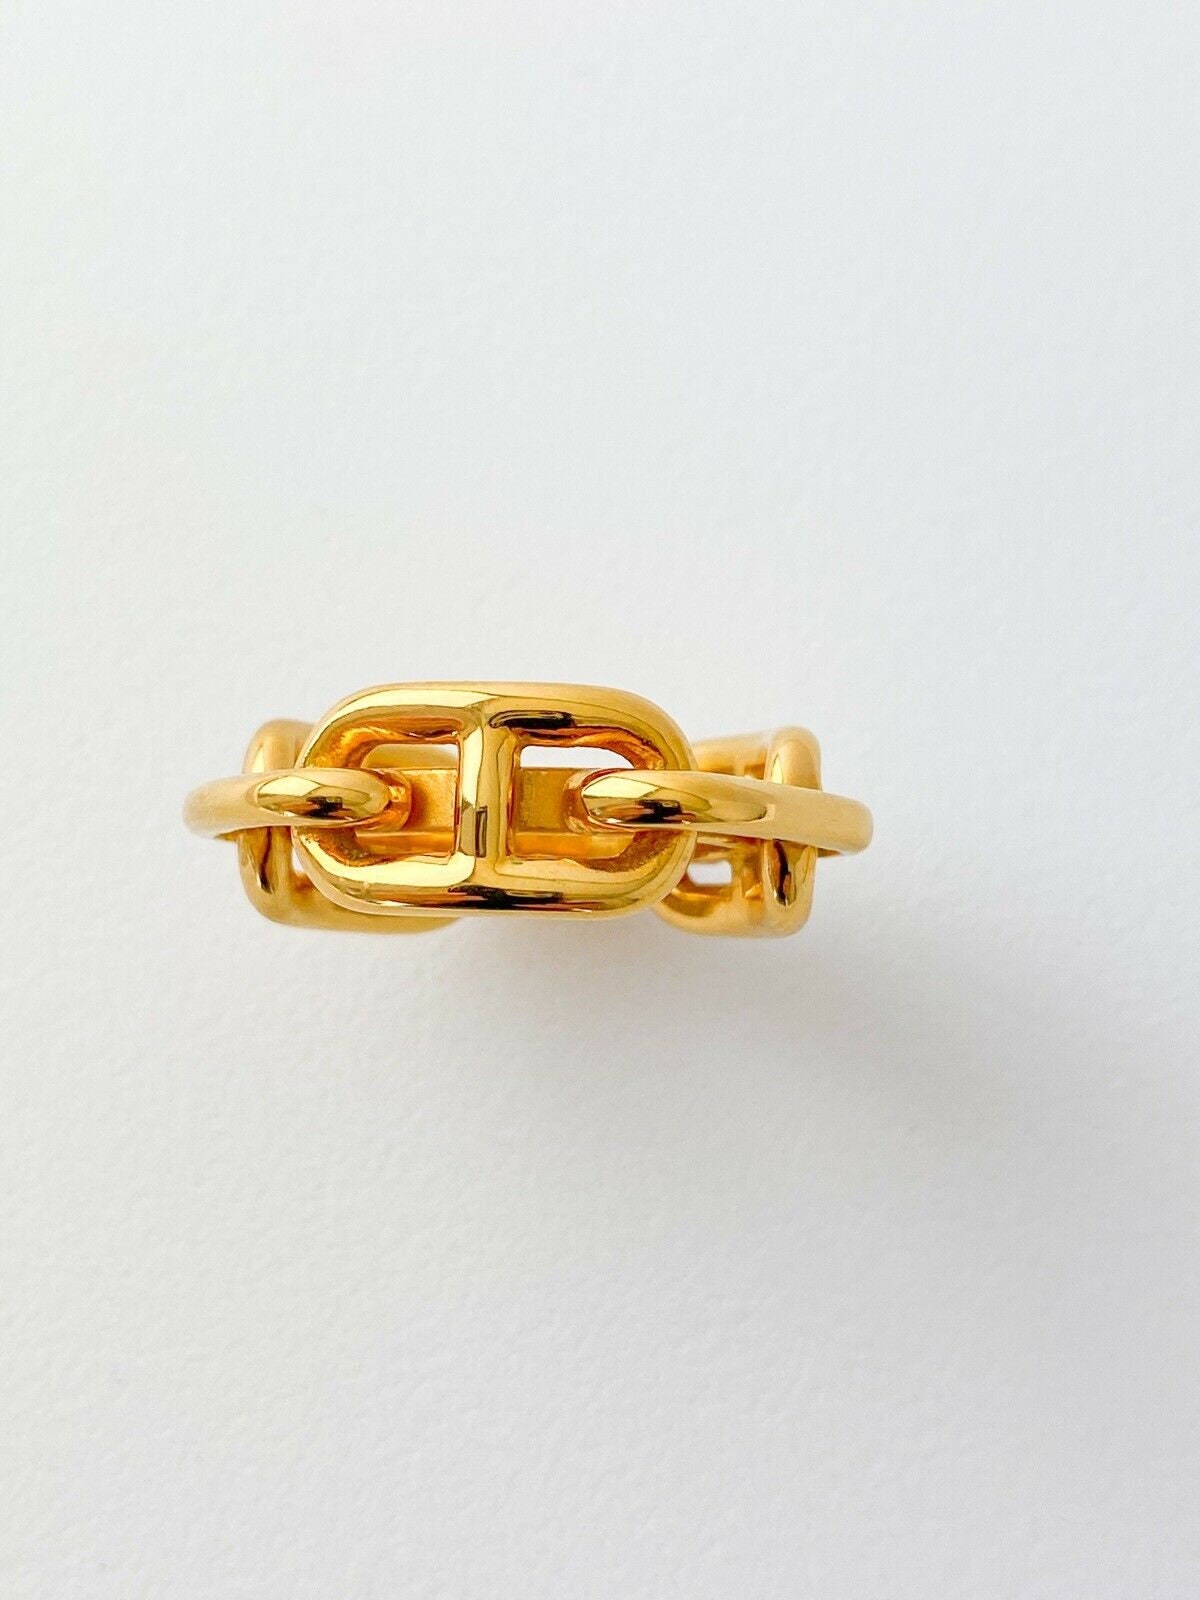 Hermes Gold Horse Bit Scarf Ring – I MISS YOU VINTAGE